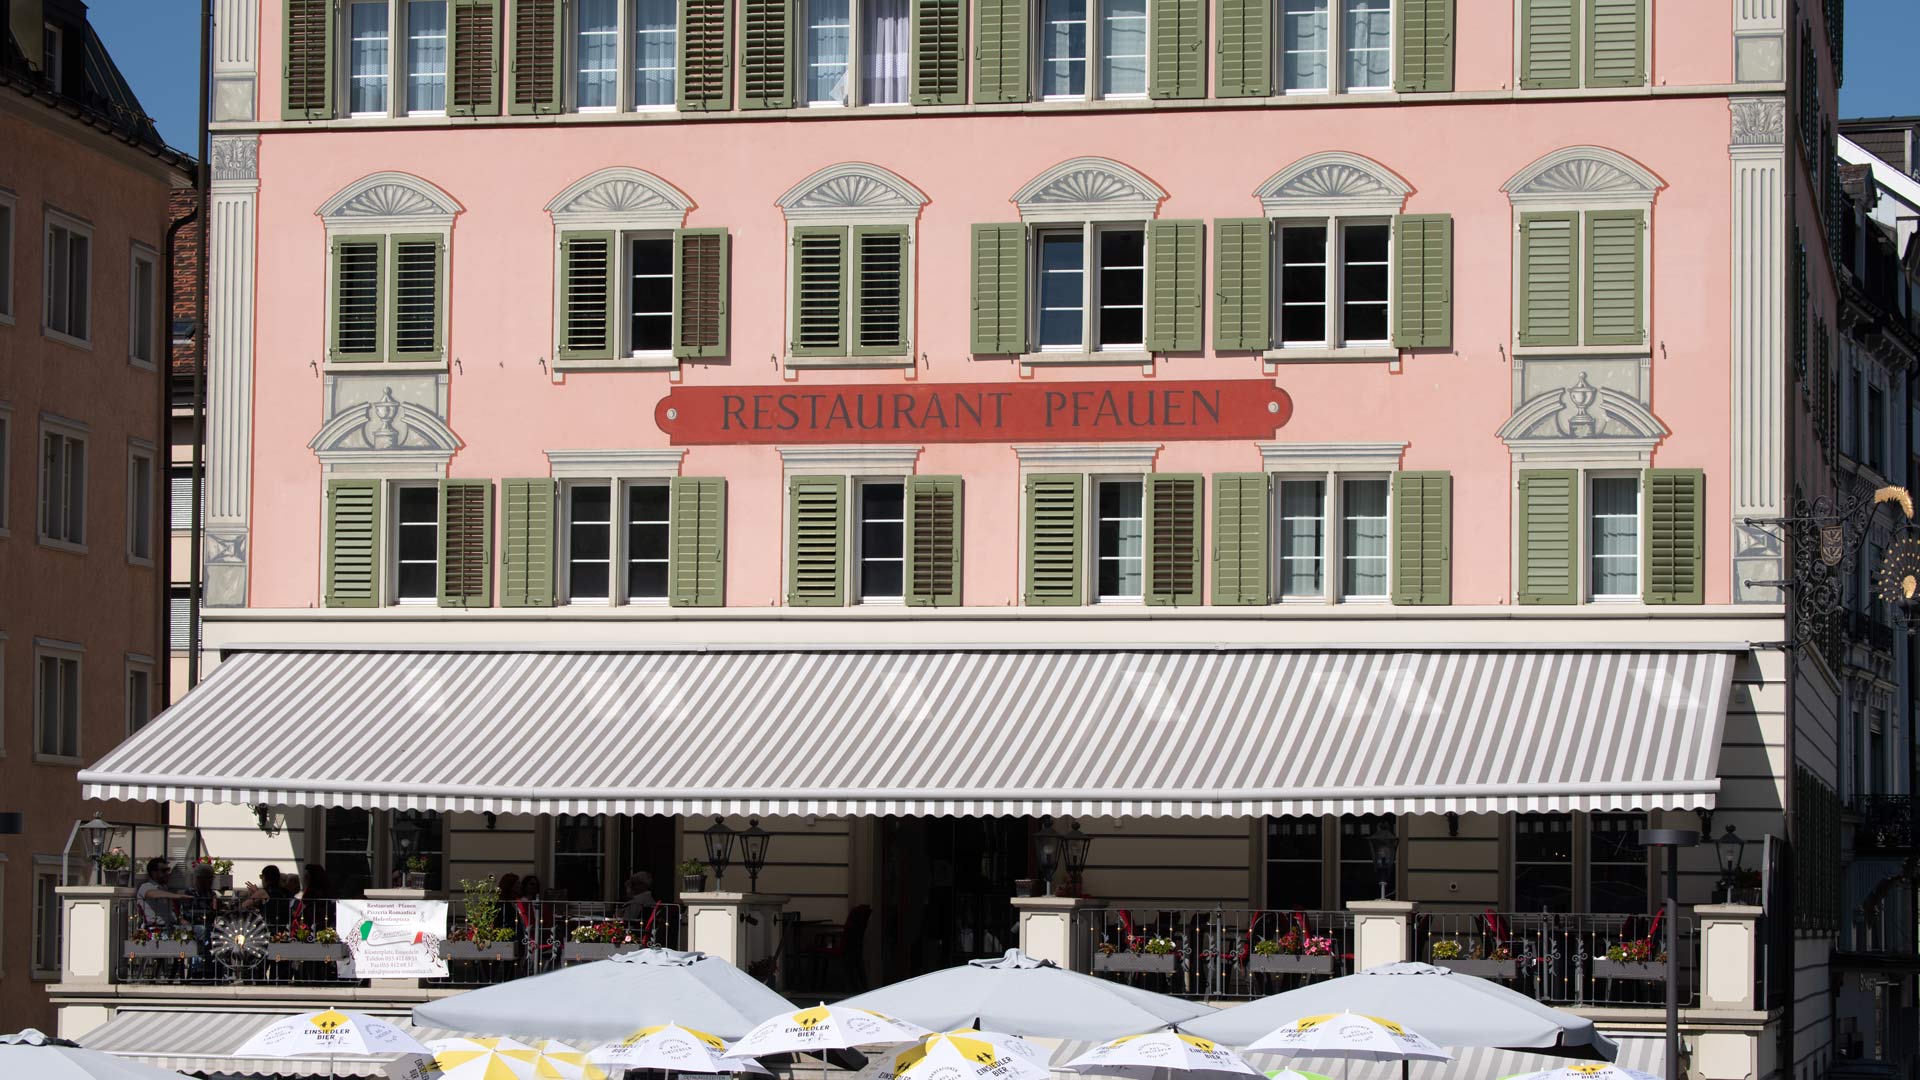 Thoma Storen, Referenzen, Restaurant Pfauen, Klosterplatz, Einsiedeln